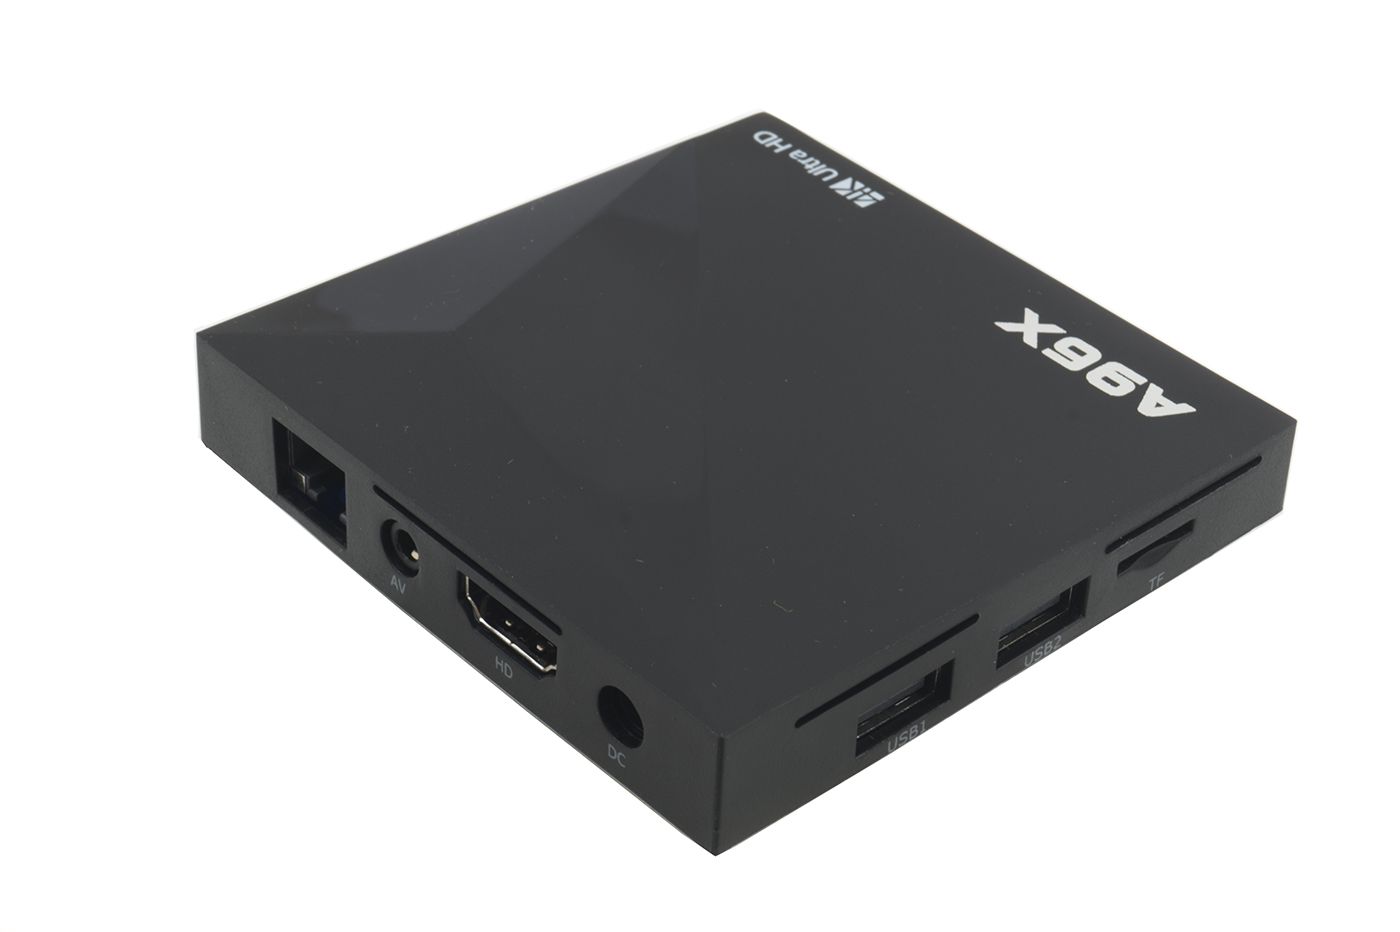 TV Box A96X NEXBOX Android c/ Controle 